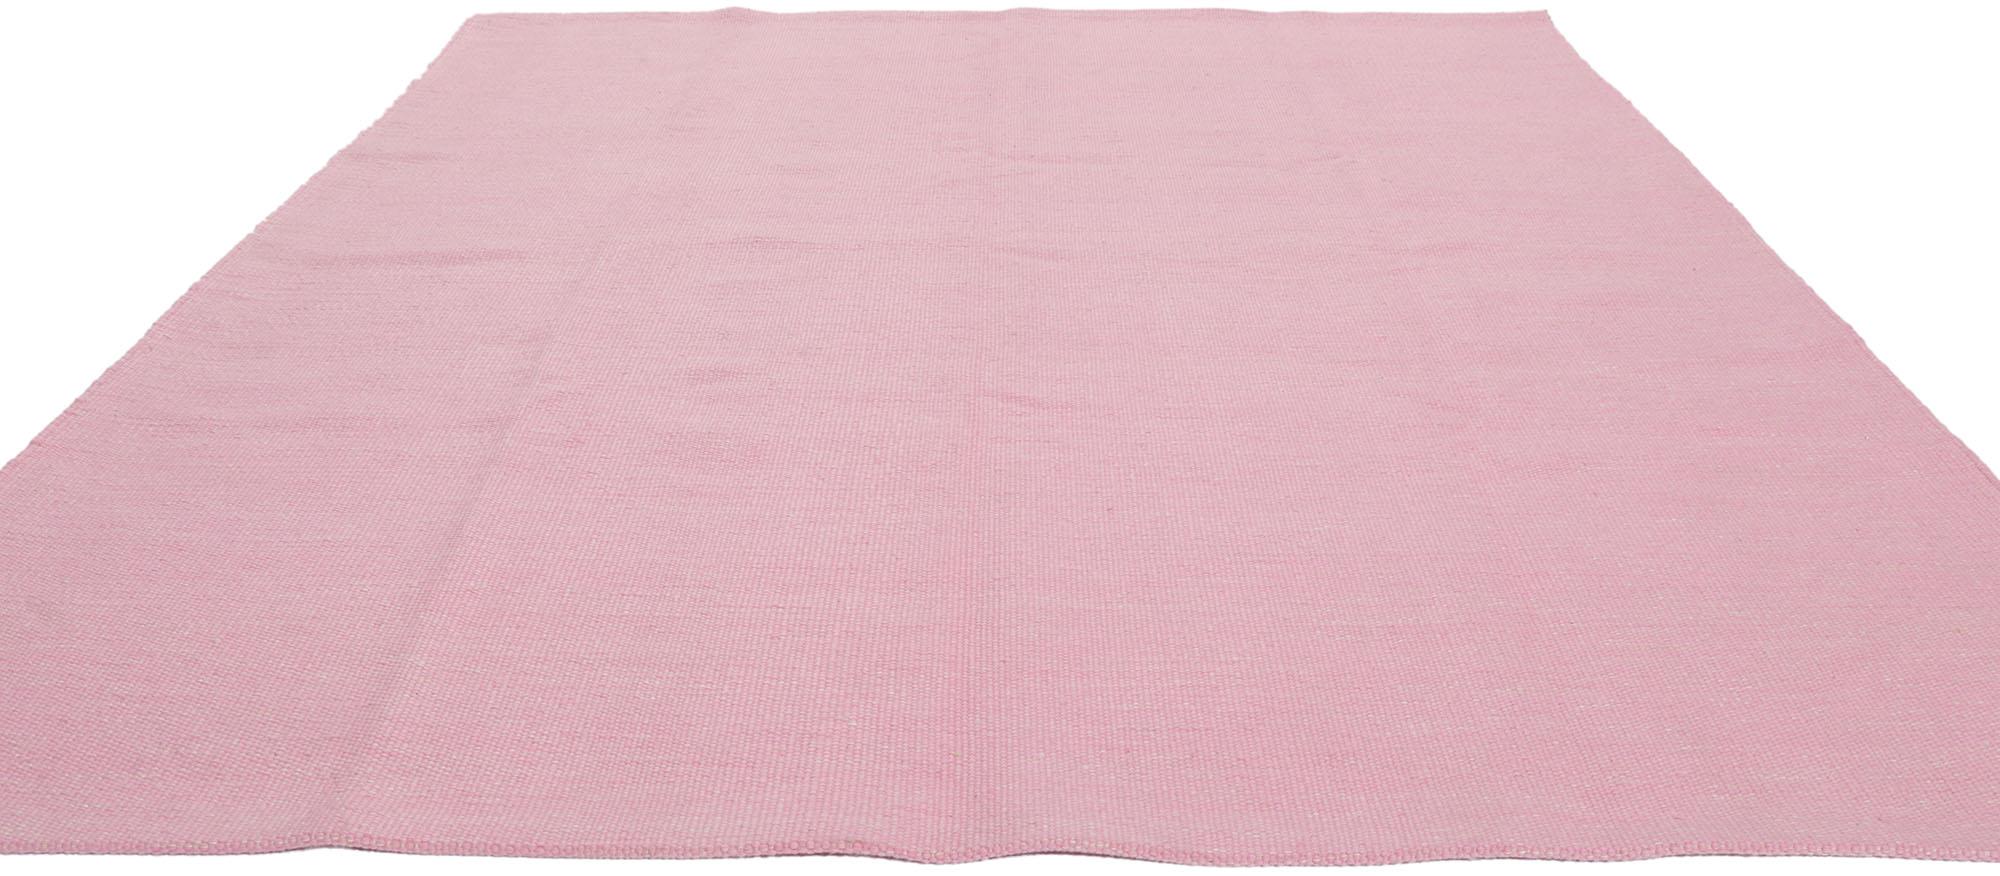 kilim rugs pink